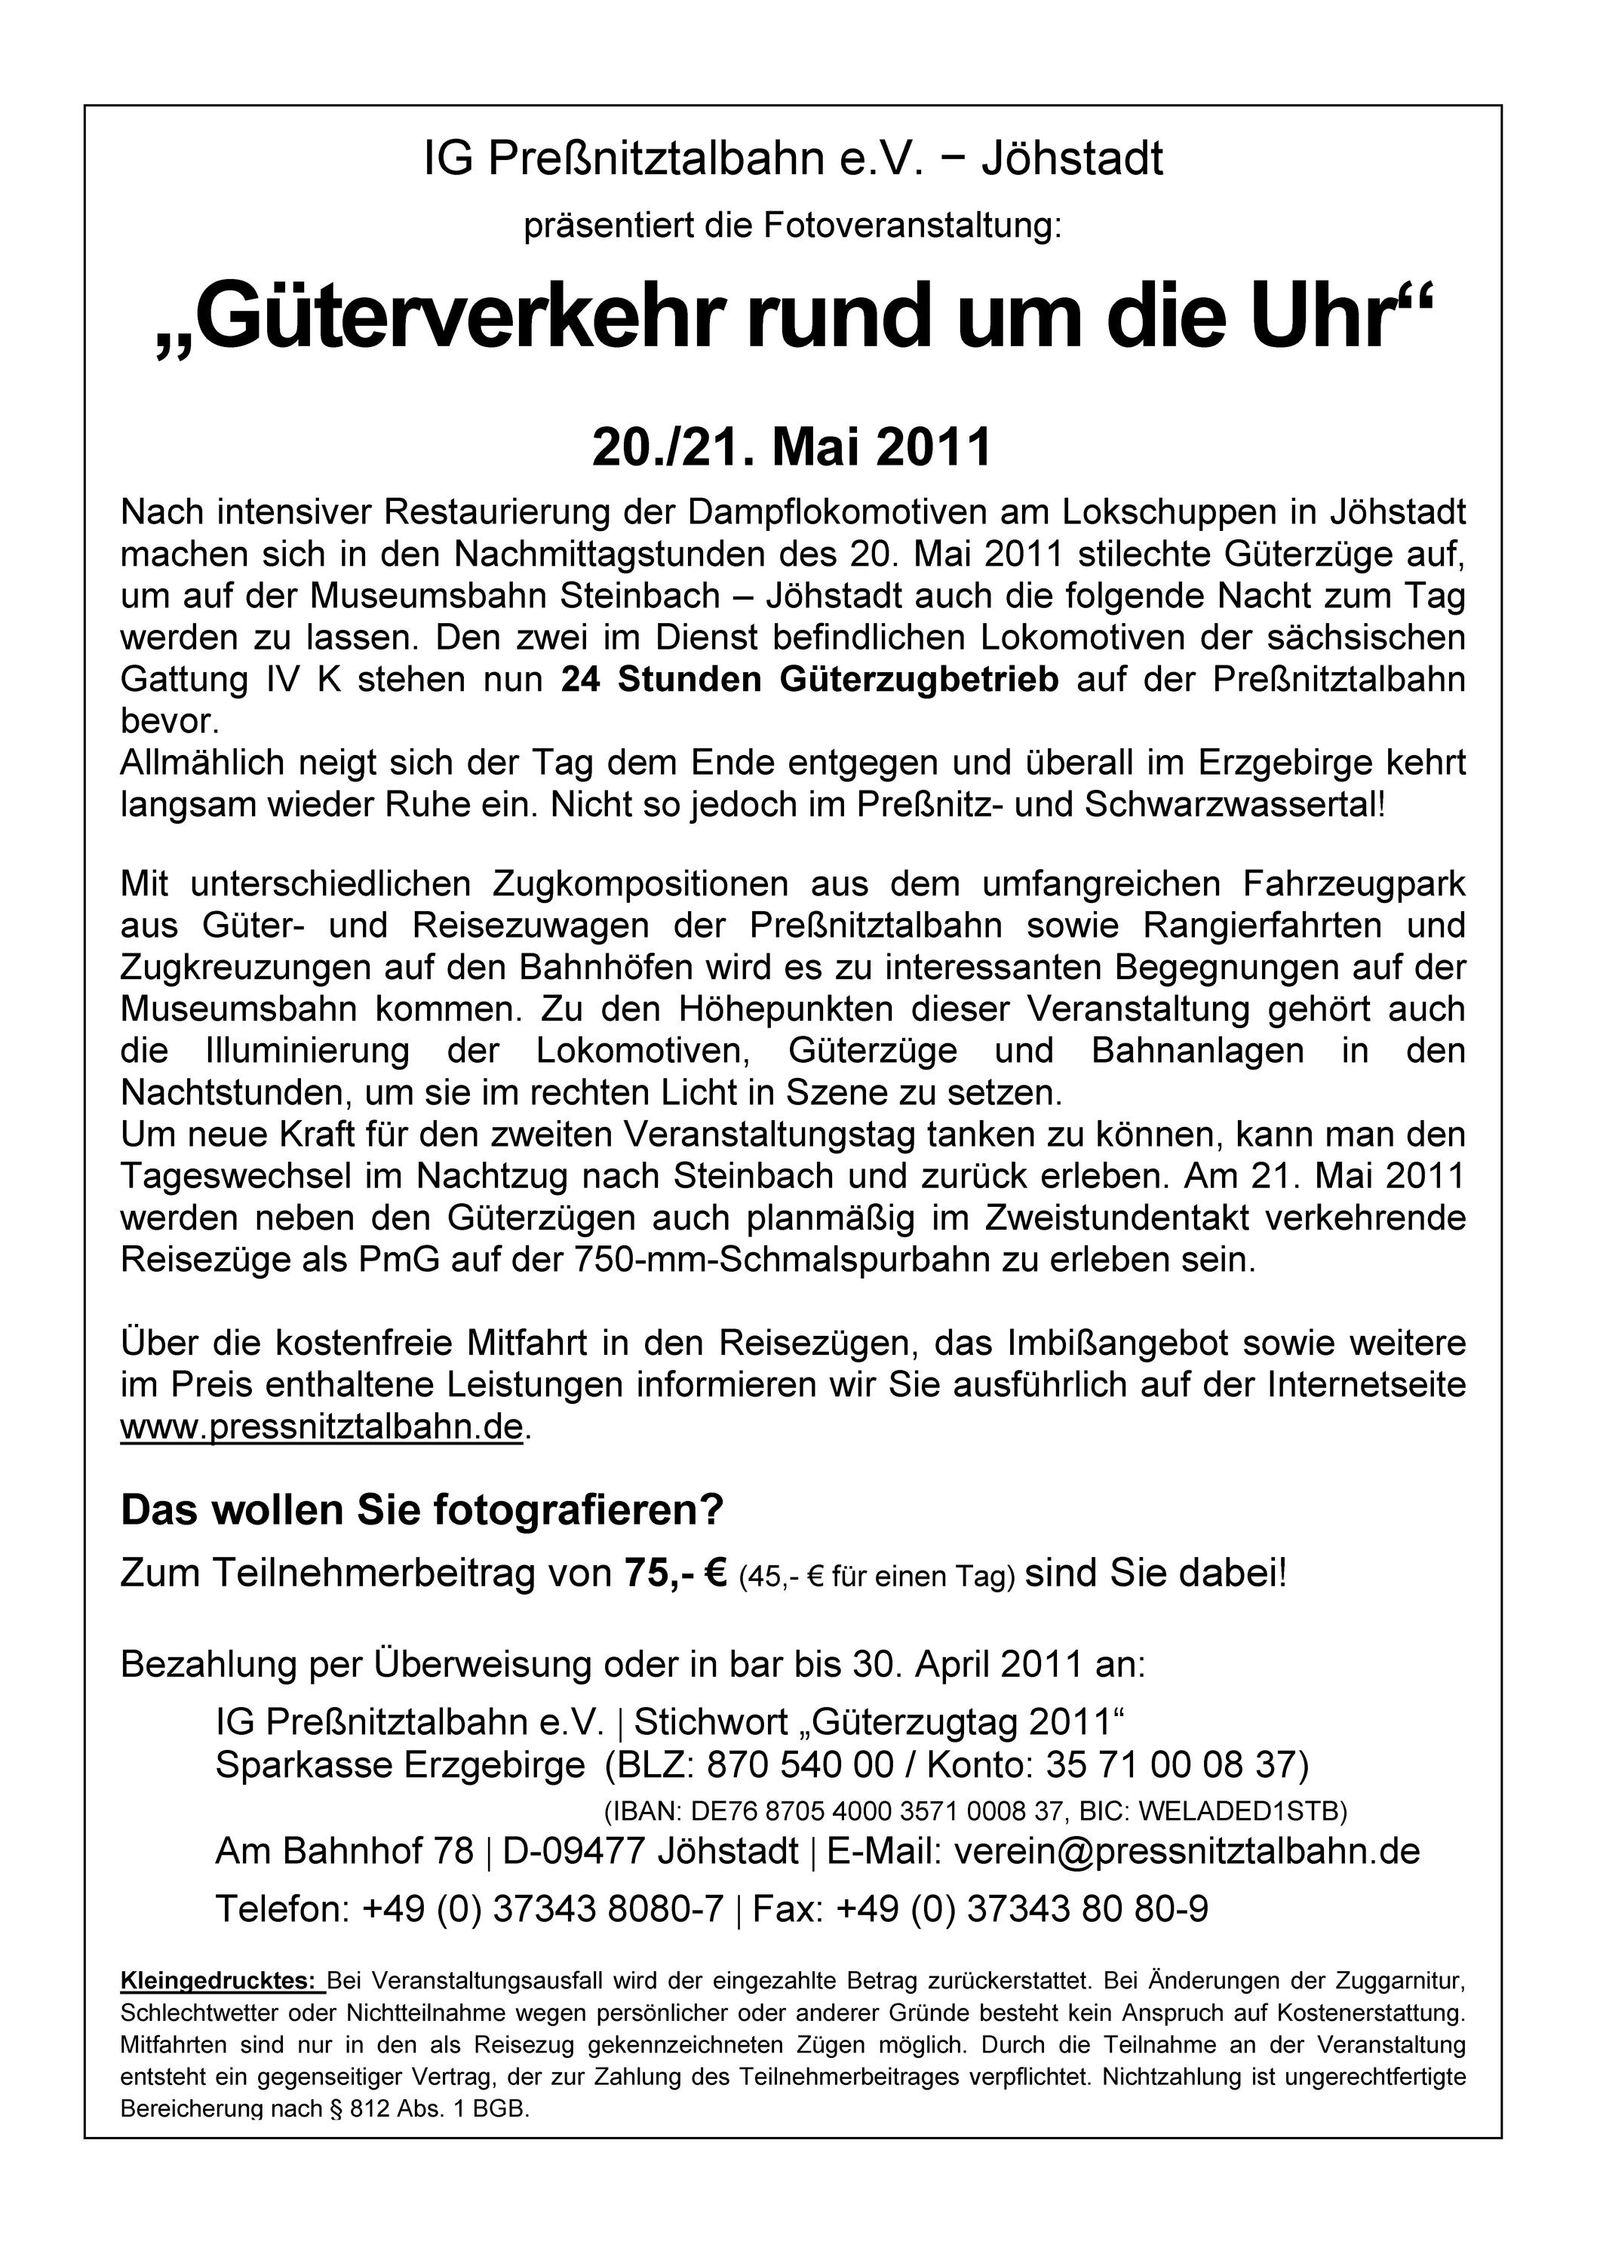 Vorankündigung 20./21. Mai 2011: "Güterverkehr rund um die Uhr"